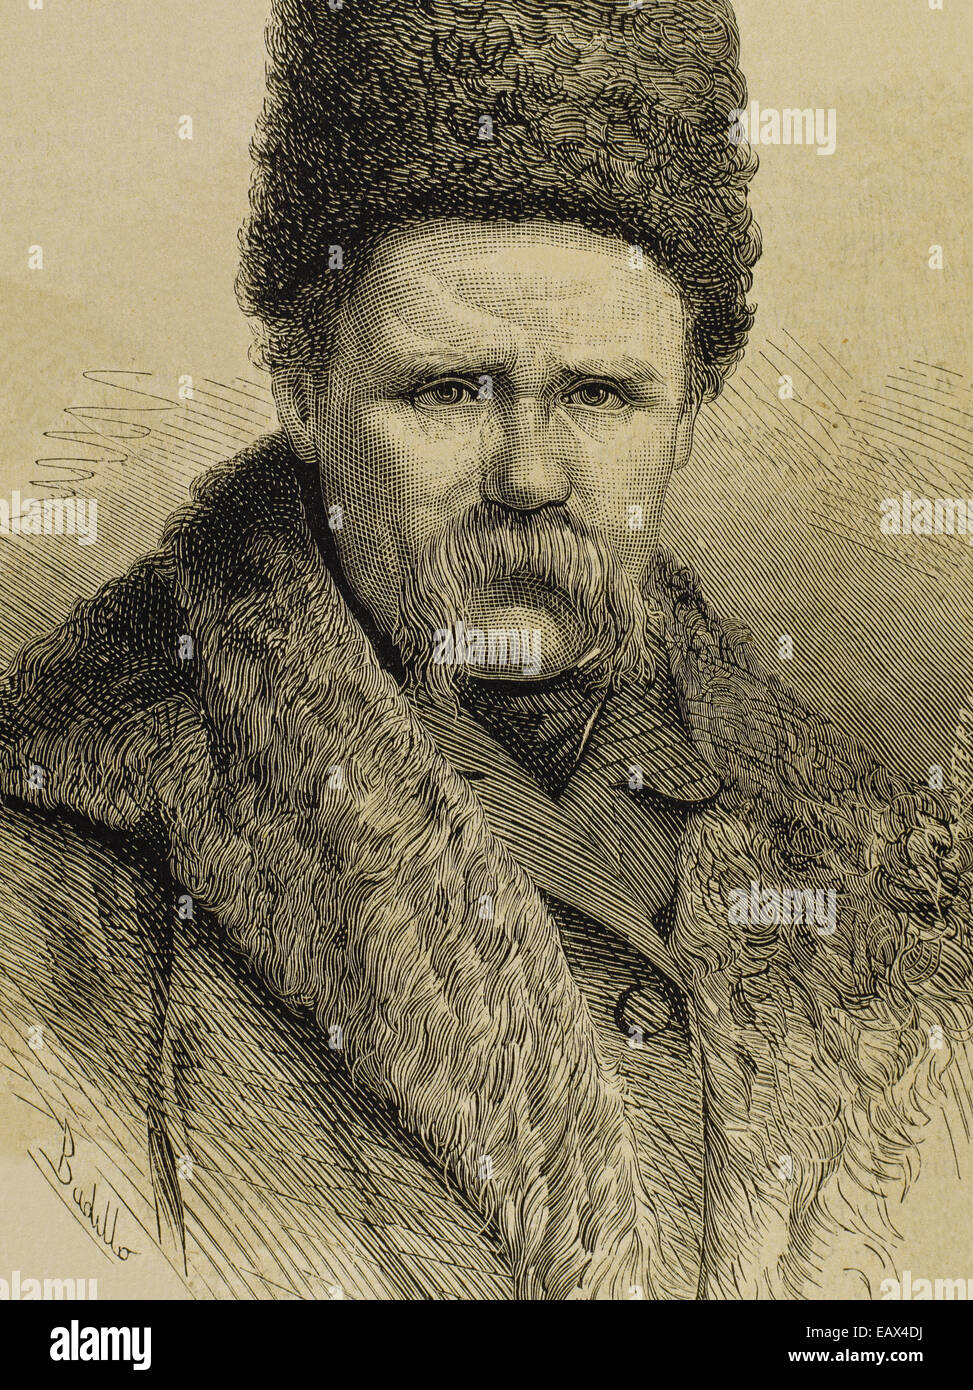 Taras Shevchenko (1814-1861). Poeta ucraniano. Retrato. Grabado de la Ilustracion española y americana, 1877. Foto de stock